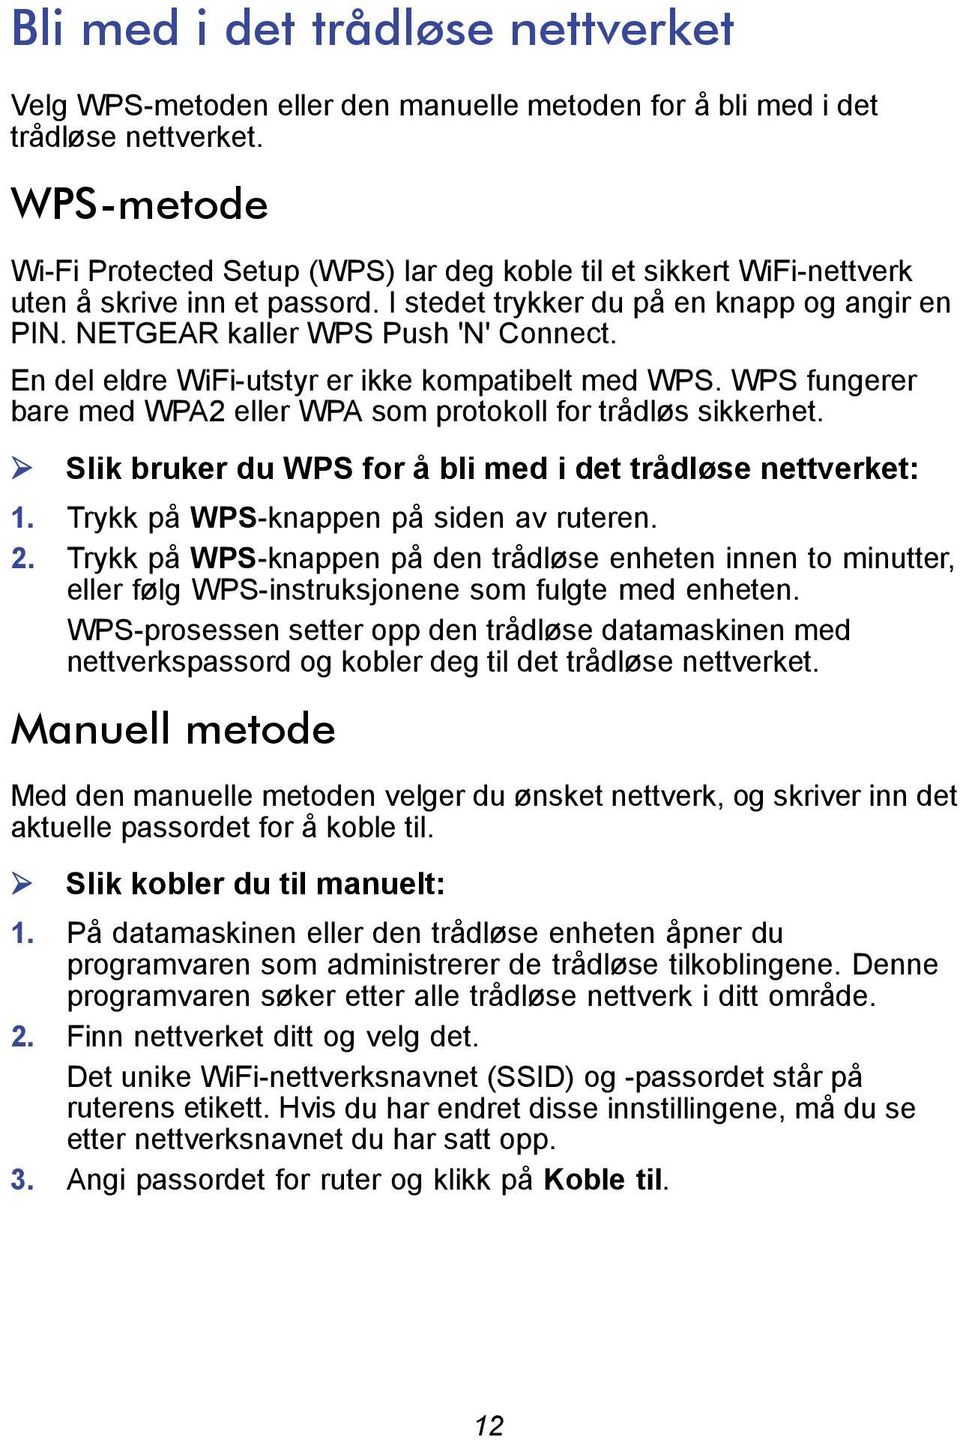 En del eldre WiFi-utstyr er ikke kompatibelt med WPS. WPS fungerer bare med WPA2 eller WPA som protokoll for trådløs sikkerhet. Slik bruker du WPS for å bli med i det trådløse nettverket: 1.